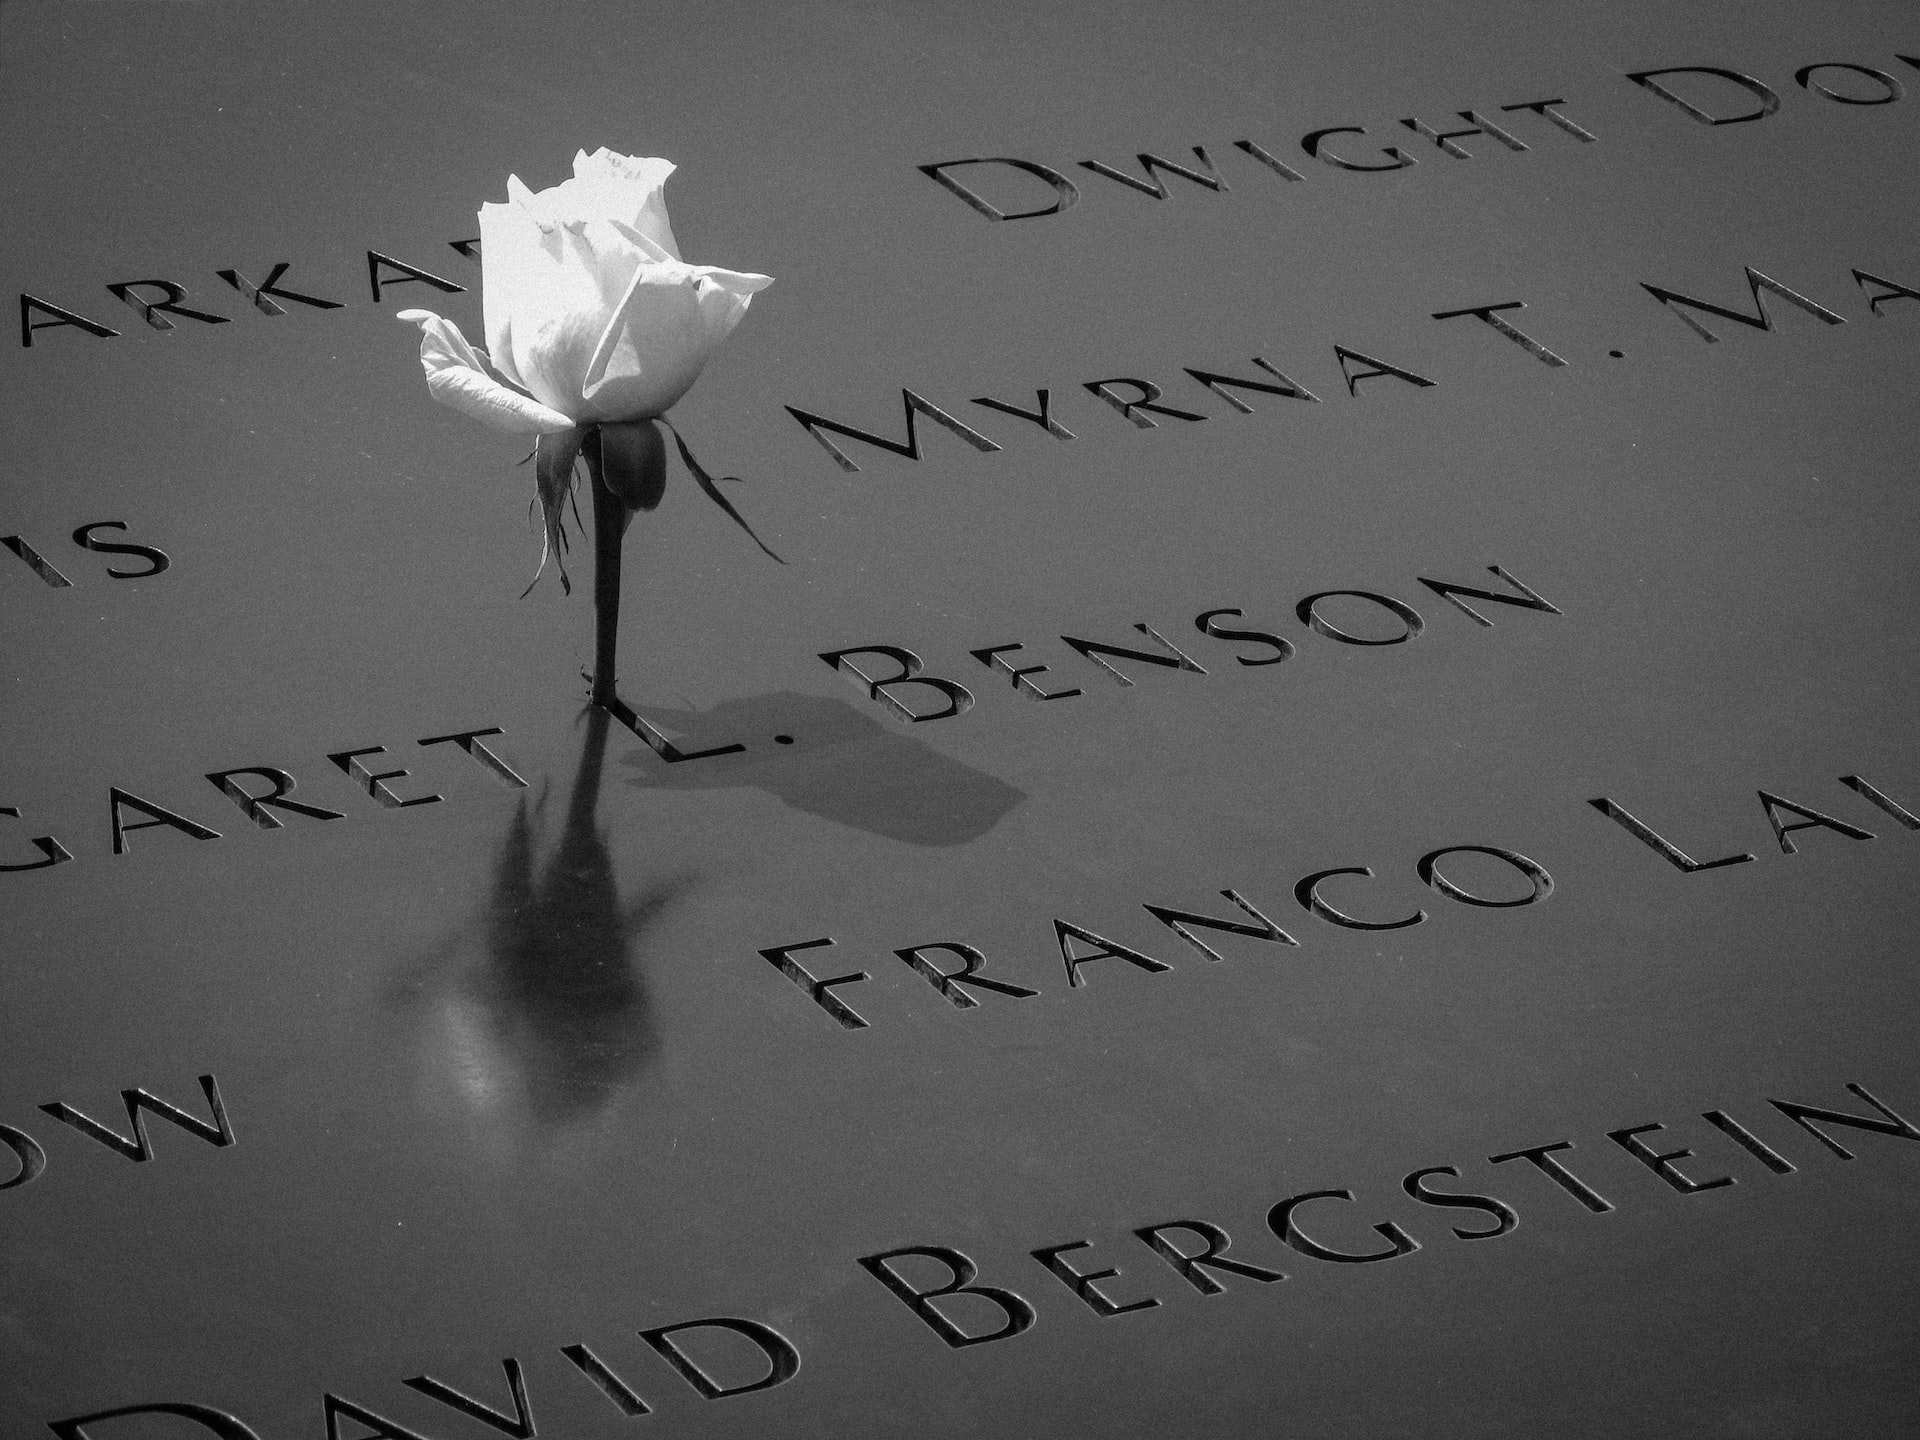 9/11 Memorial Names